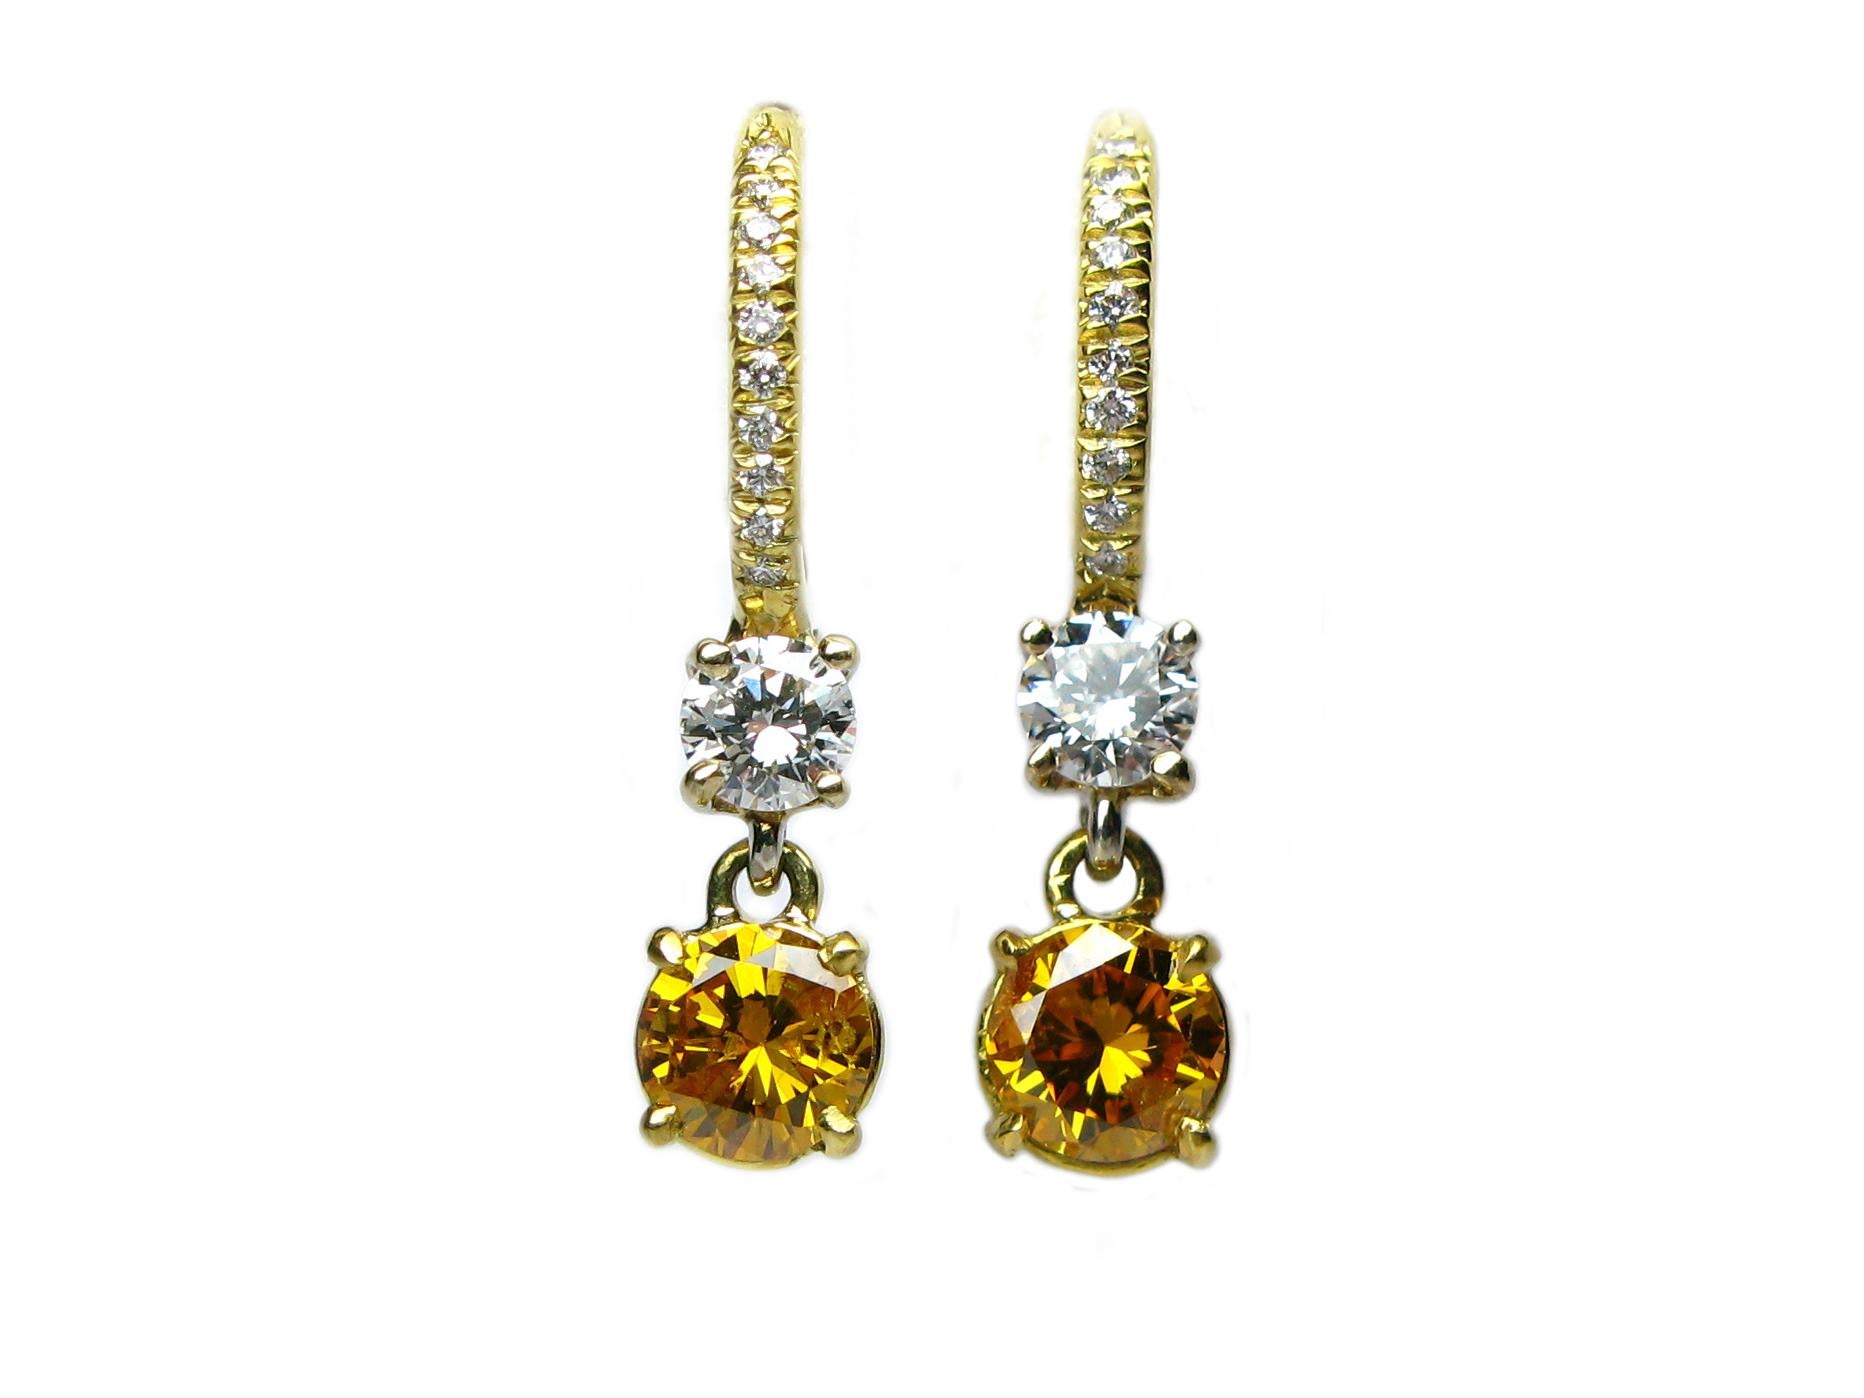 Round Cut Fancy Vivid Yellow Orange Diamond Earrings